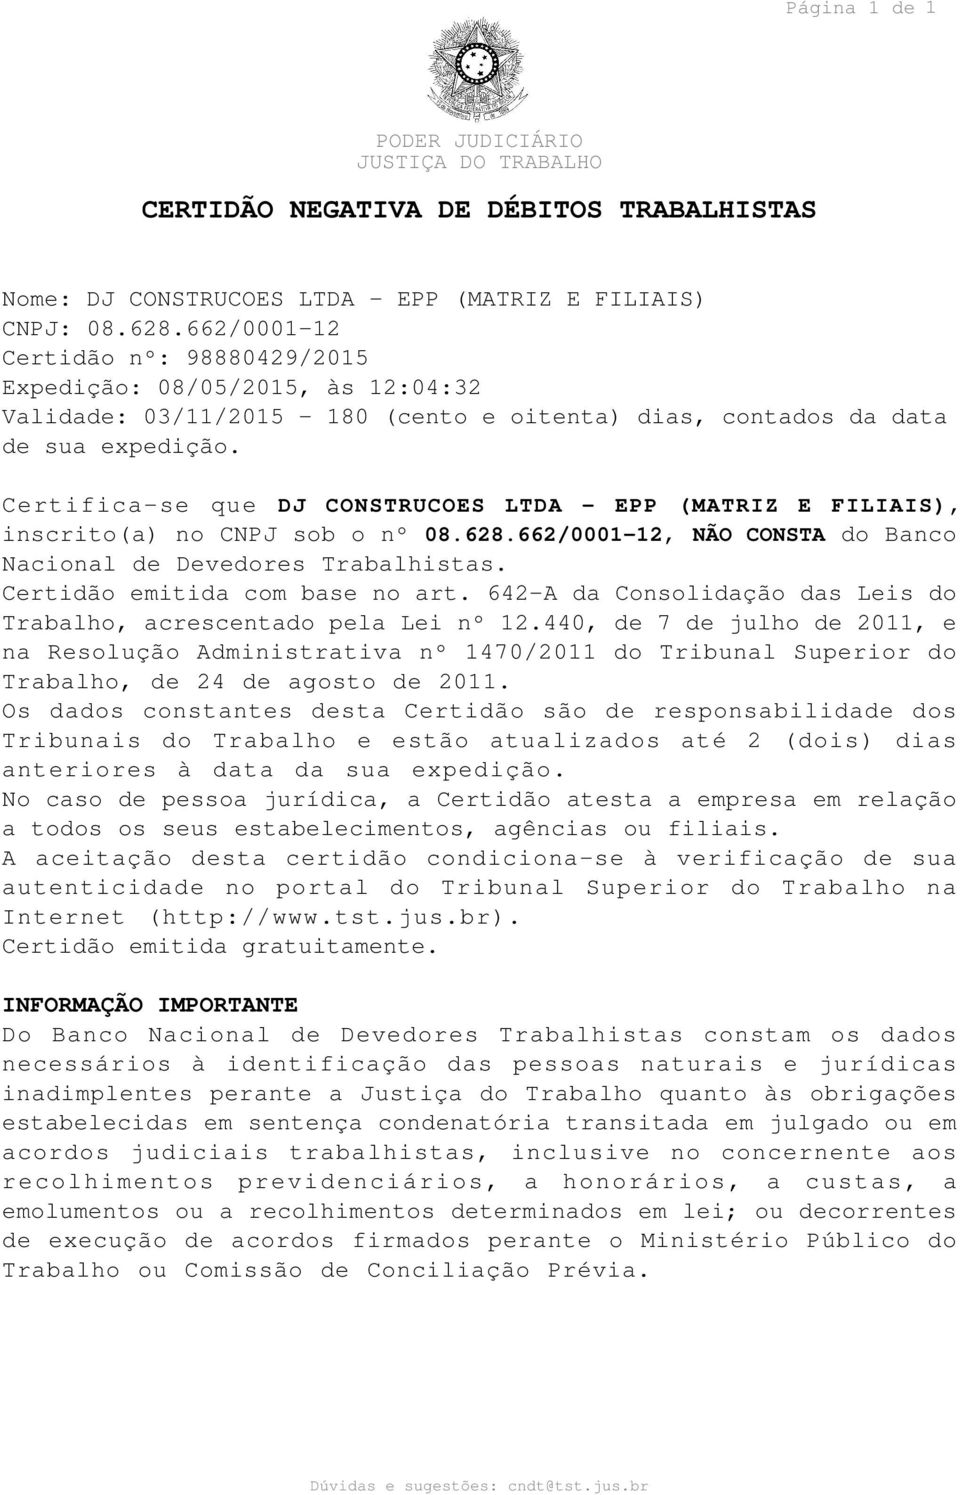 Certifica-se que DJ CONSTRUCOES LTDA - EPP (MATRIZ E FILIAIS), inscrito(a) no CNPJ sob o nº 08.628.662/0001-12, NÃO CONSTA do Banco Nacional de Devedores Trabalhistas.